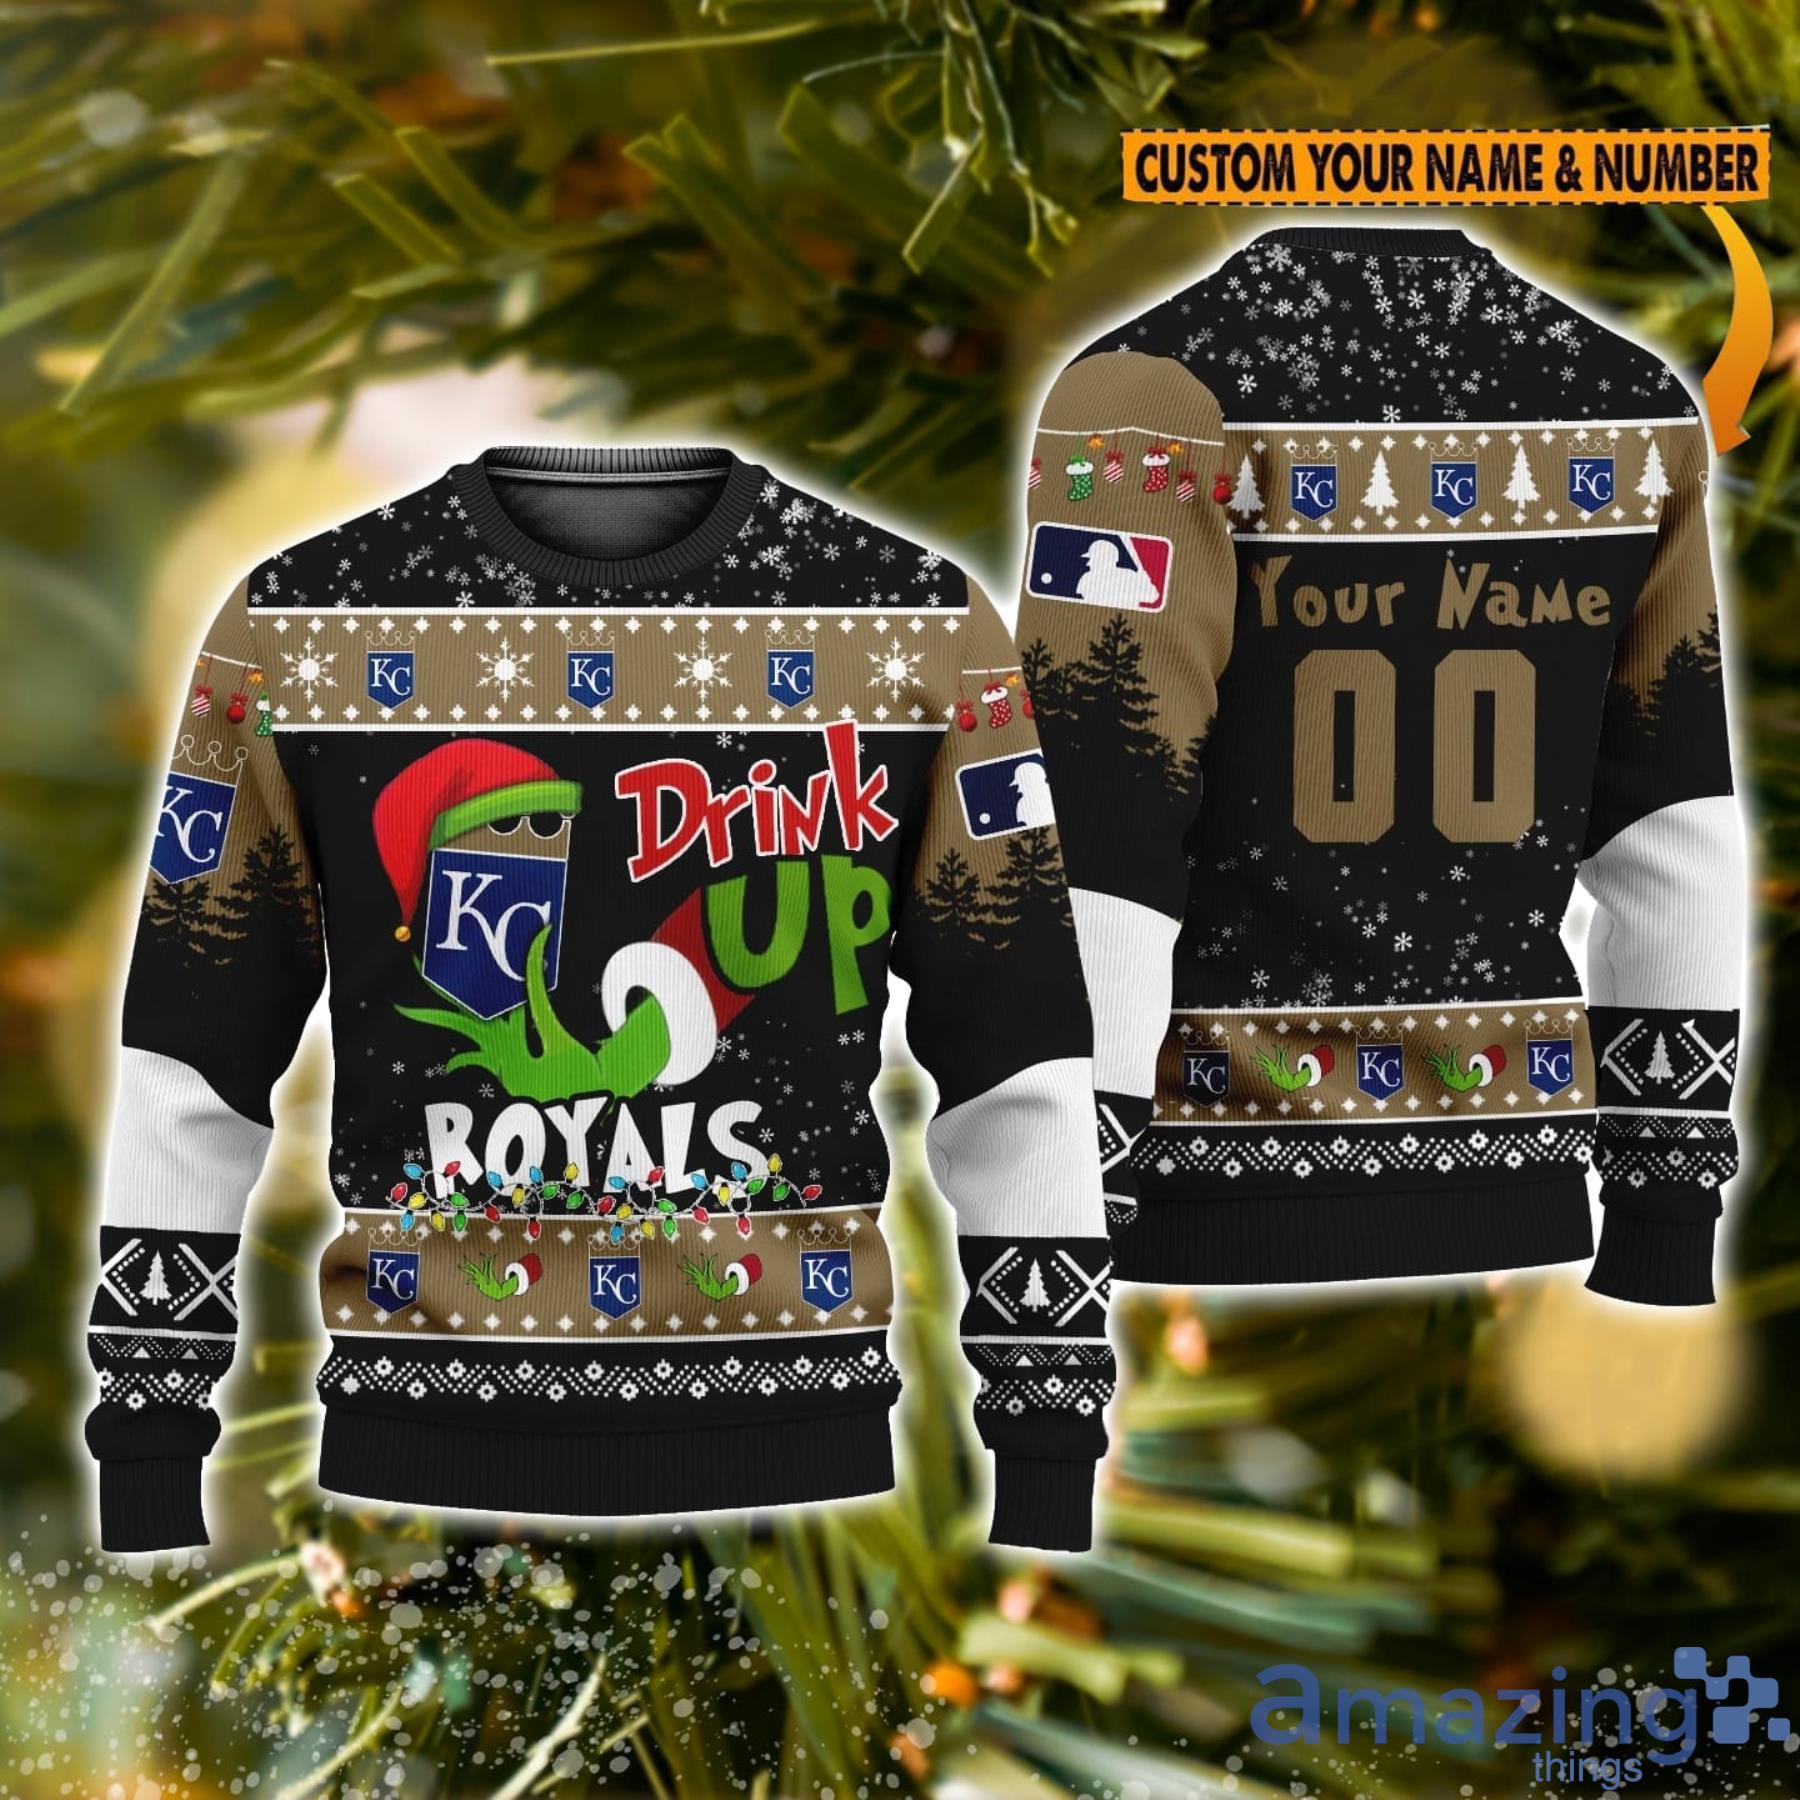 MLB Kansas City Royals Mix Jersey Personalized Style Polo Shirt